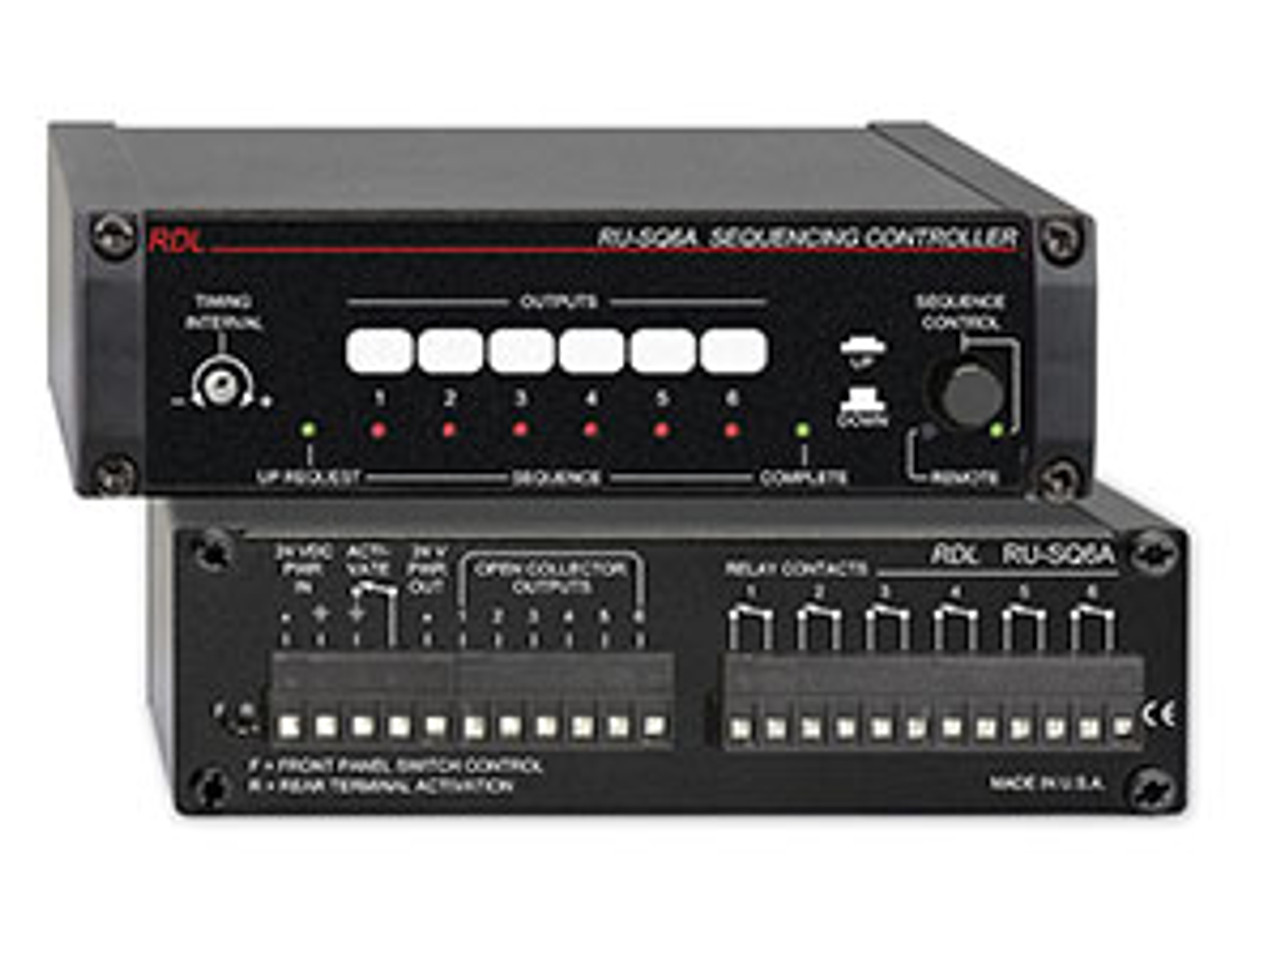 RDL RU-SQ6A Sequencing Controller - Power up, Power Down (RU-SQ6A)